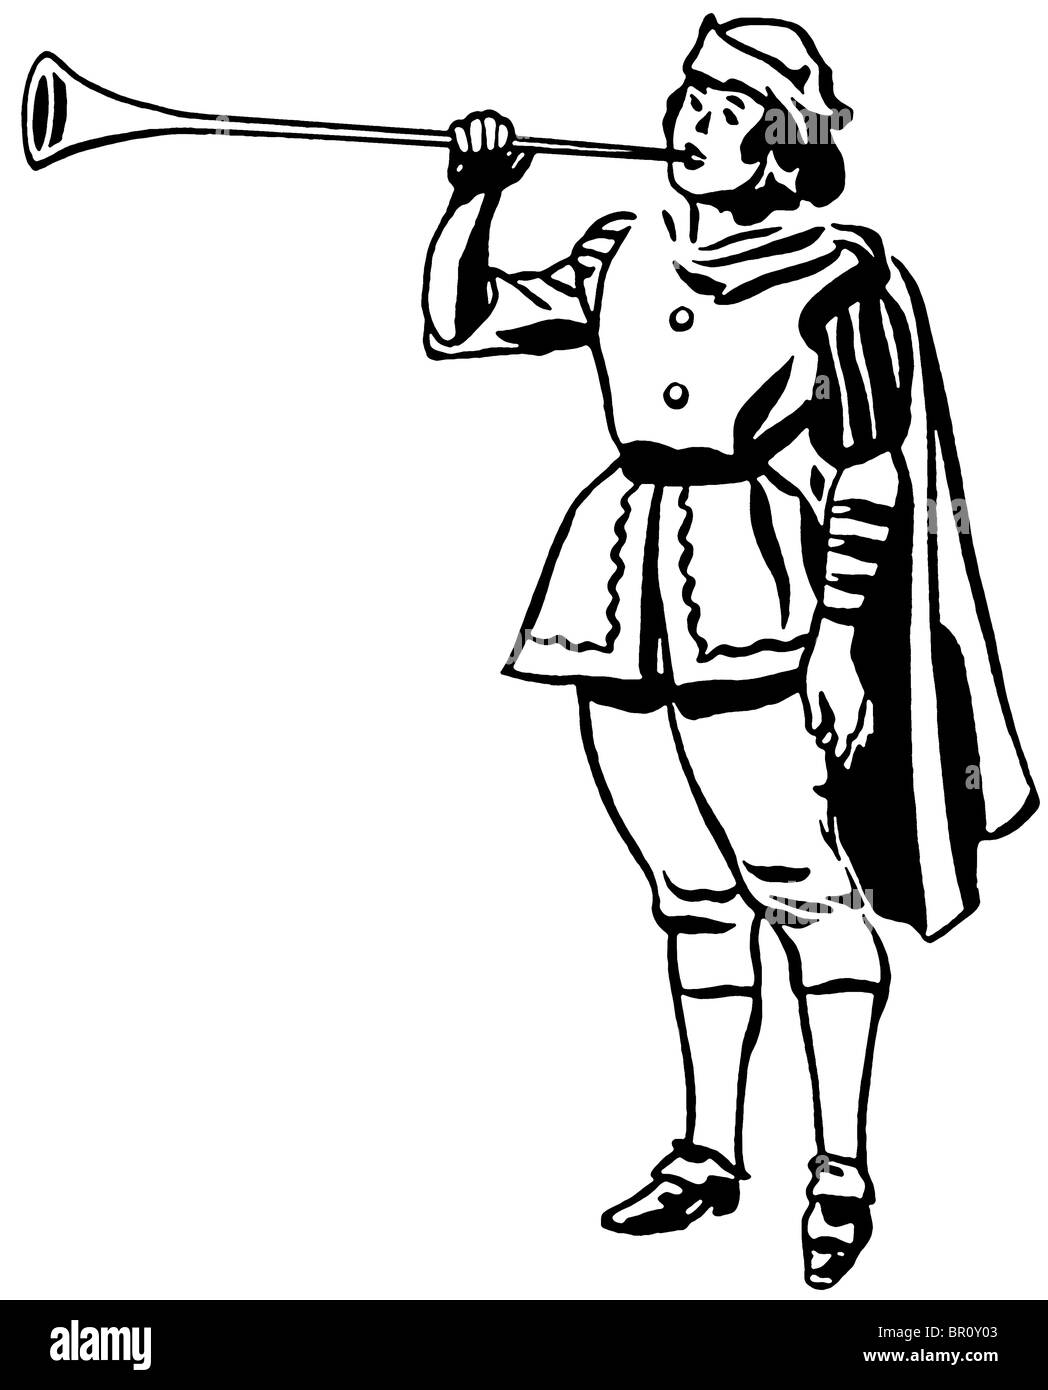 Una versione in bianco e nero di un disegno di un uomo in epoca rinascimentale la riproduzione di un avvisatore acustico o a tromba Foto Stock